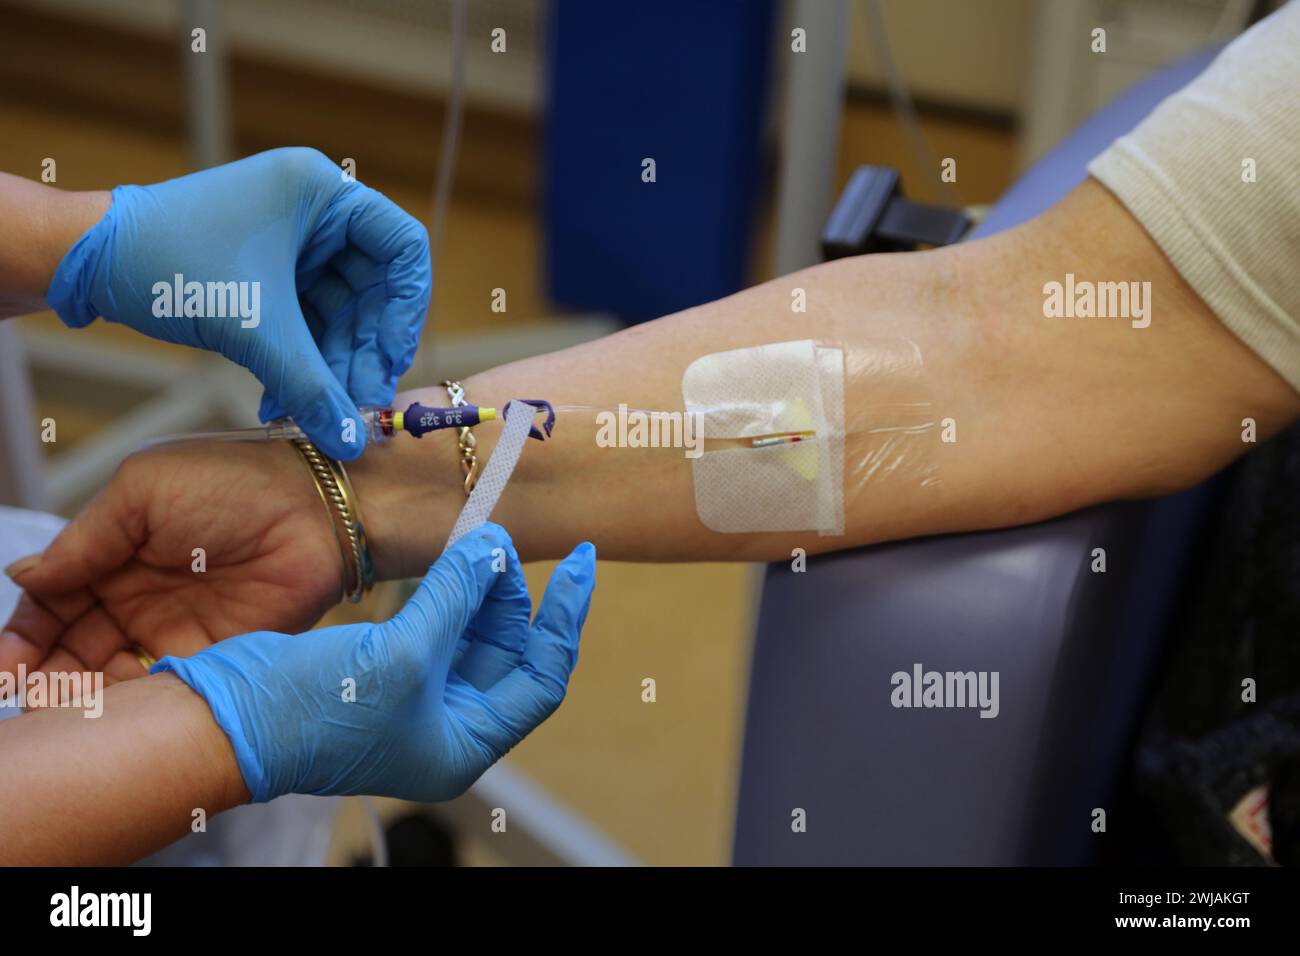 Infirmière insertion d'une canule dans le patient prêt à administrer Ferinject perfusion de fer par voie intraveineuse à l'hôpital Surrey Angleterre Banque D'Images